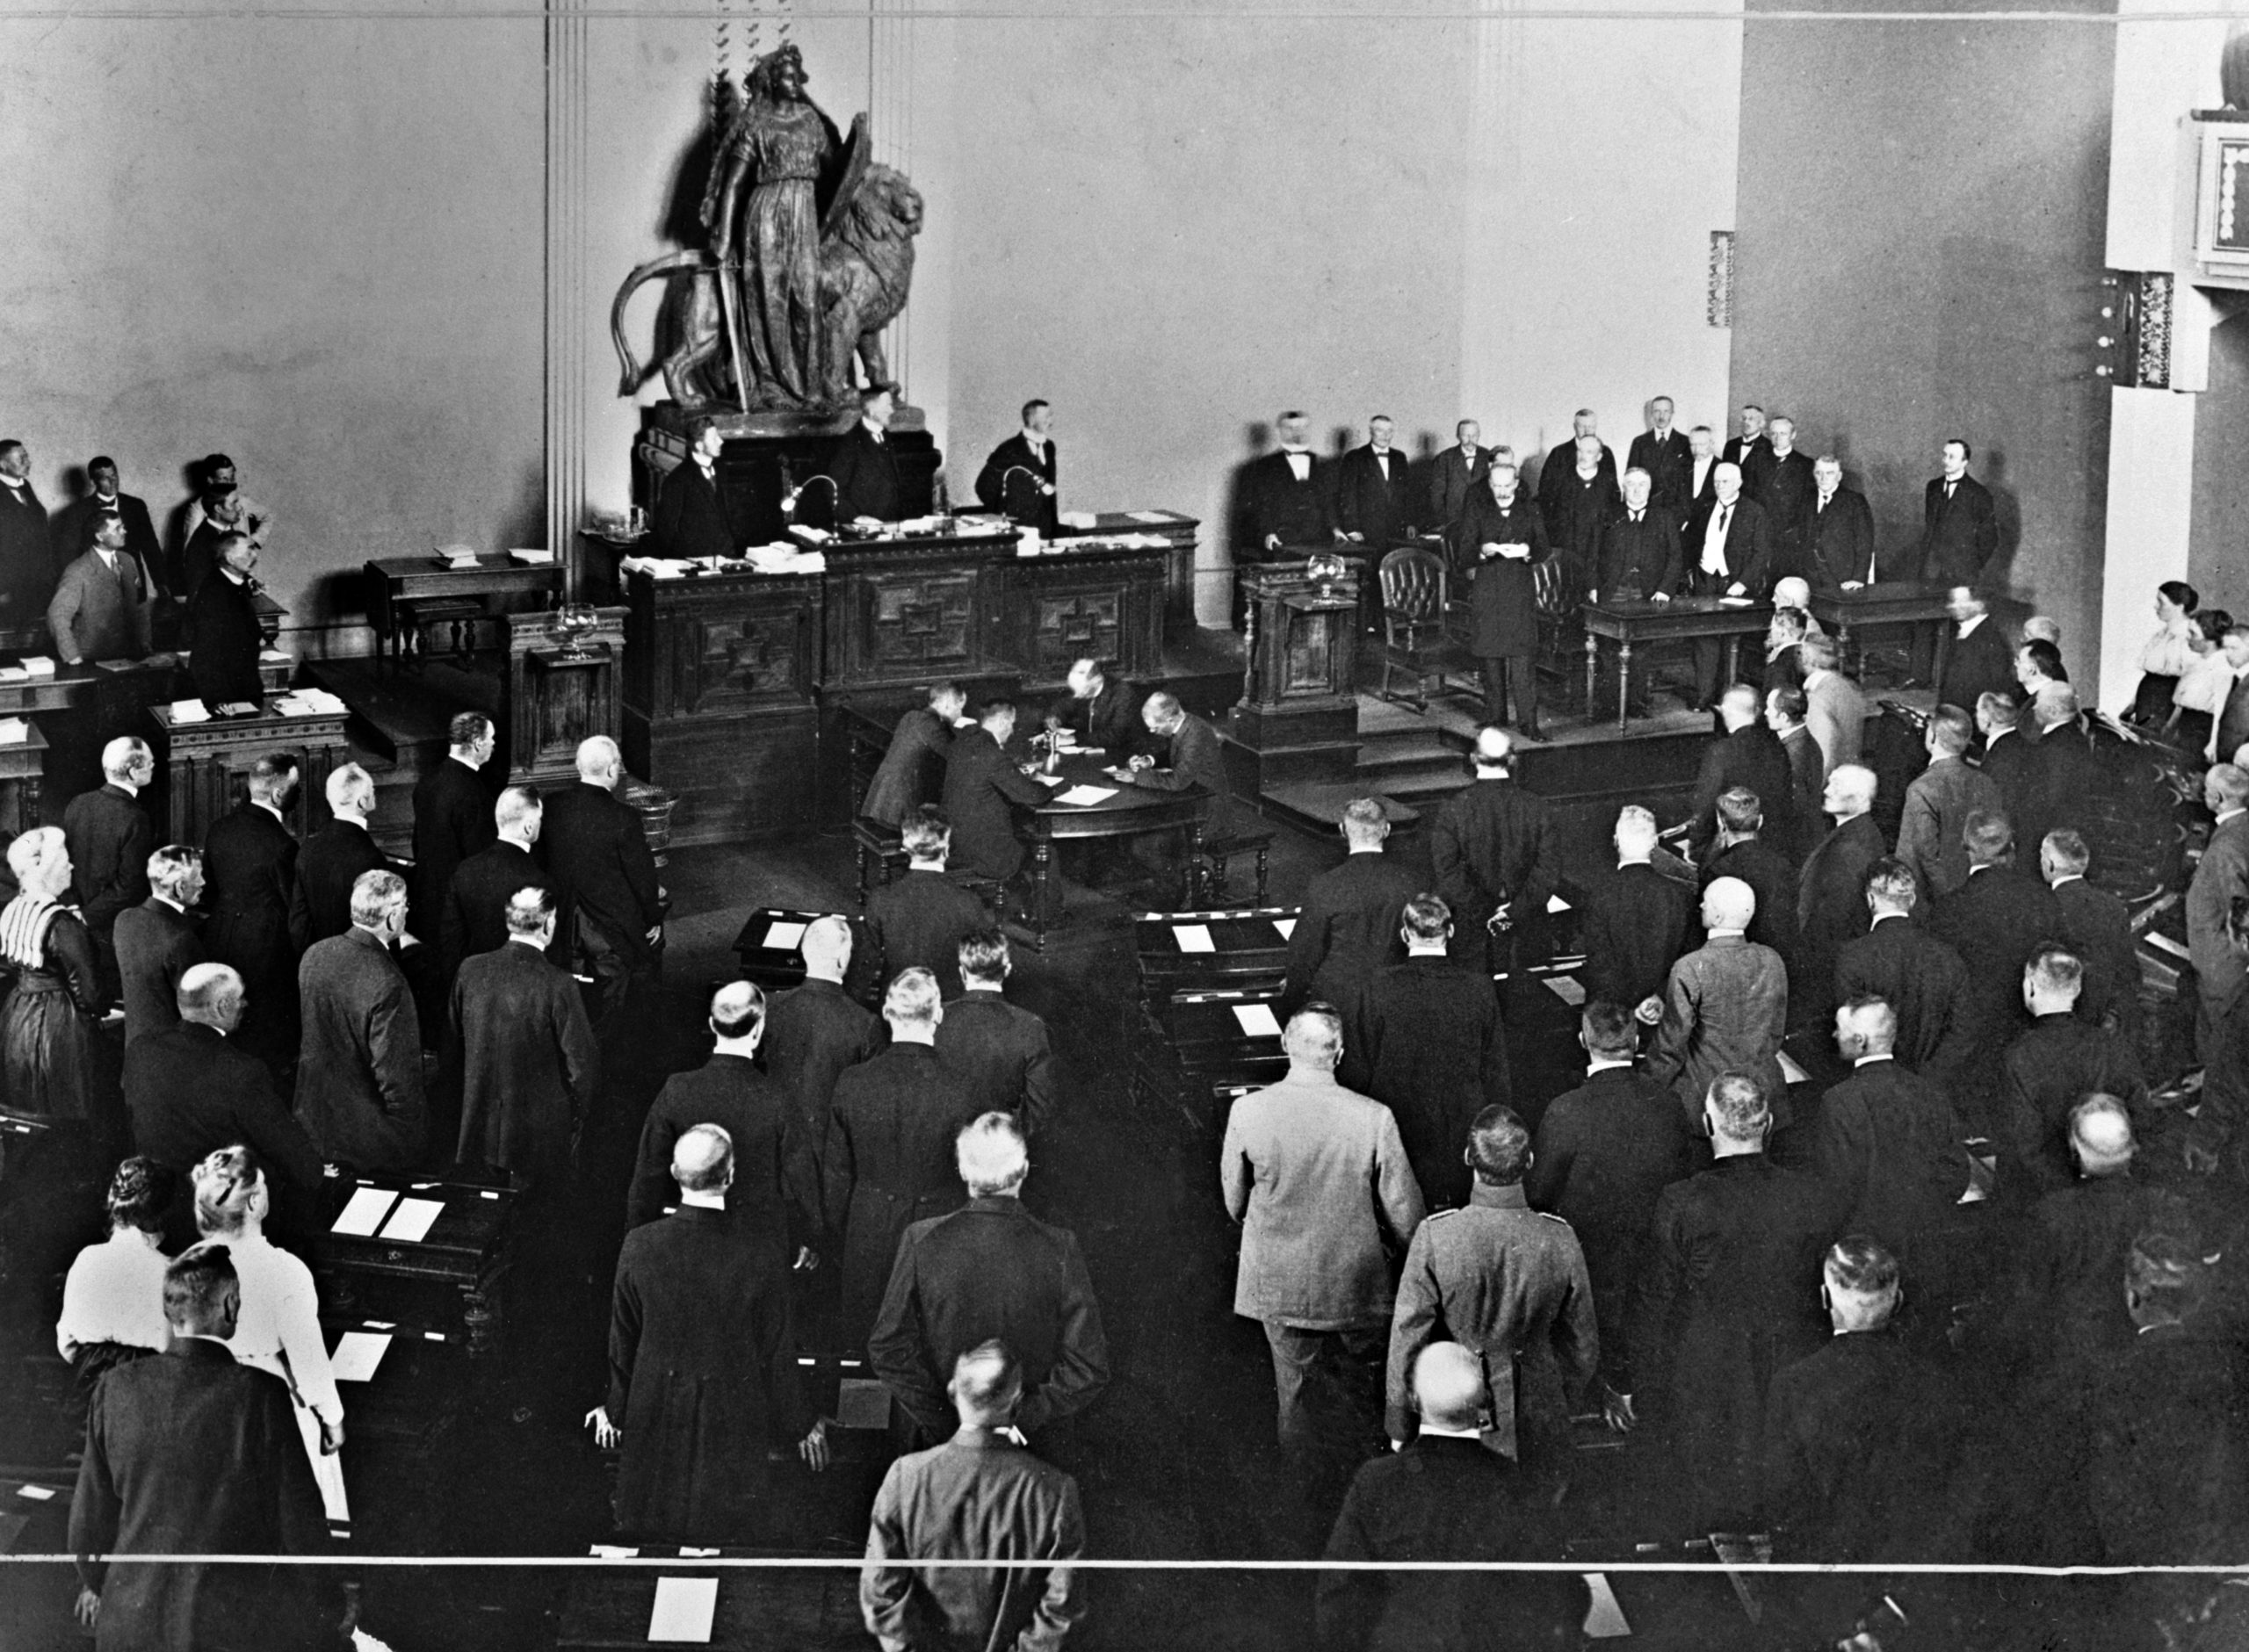 19190726 . Tasavallan ensimmäiseksi presidentiksi valittu K.J. Ståhlberg lukee presidentinvakuutuksensa eduskunnan juhlaistunnossa Heimolan istuntosalissa, Hallituskatu 15.